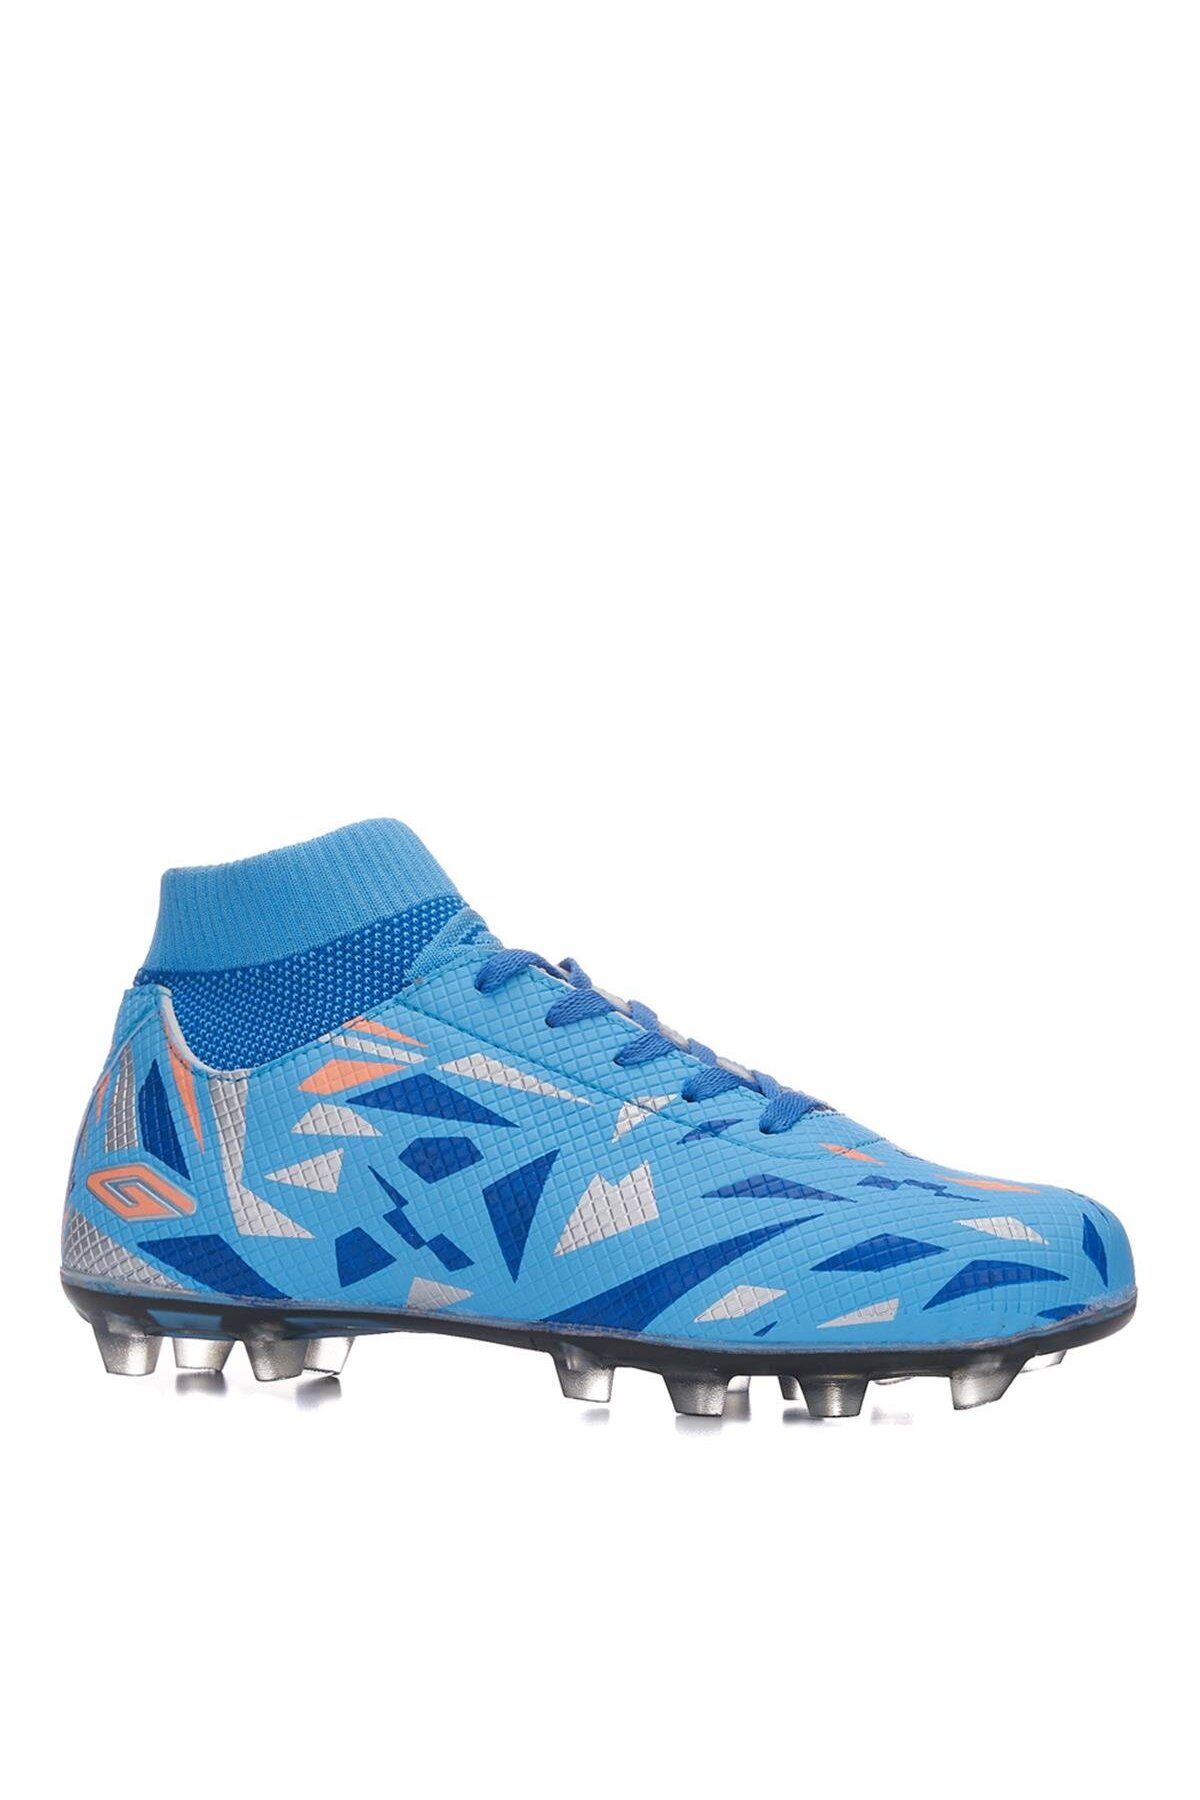 HiraLife Dugana Bilekli Çoraplı Çim Saha Dişli Halısaha Krampon Futbol Ayakkabısı 2303 Mavi